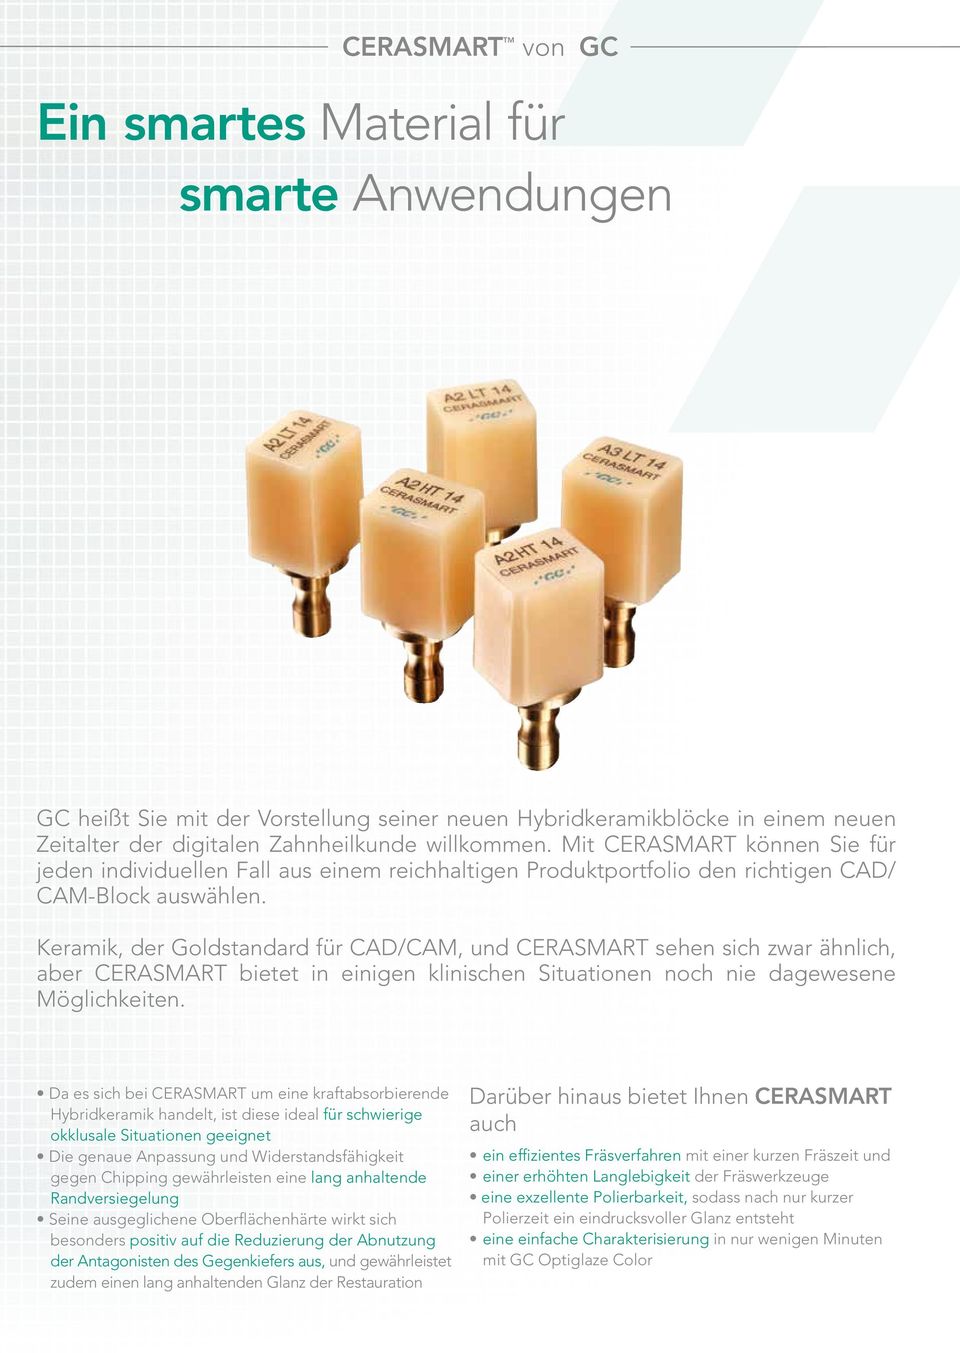 Keramik, der Goldstandard für CAD/CAM, und CERASMART sehen sich zwar ähnlich, aber CERASMART bietet in einigen klinischen Situationen noch nie dagewesene Möglichkeiten.